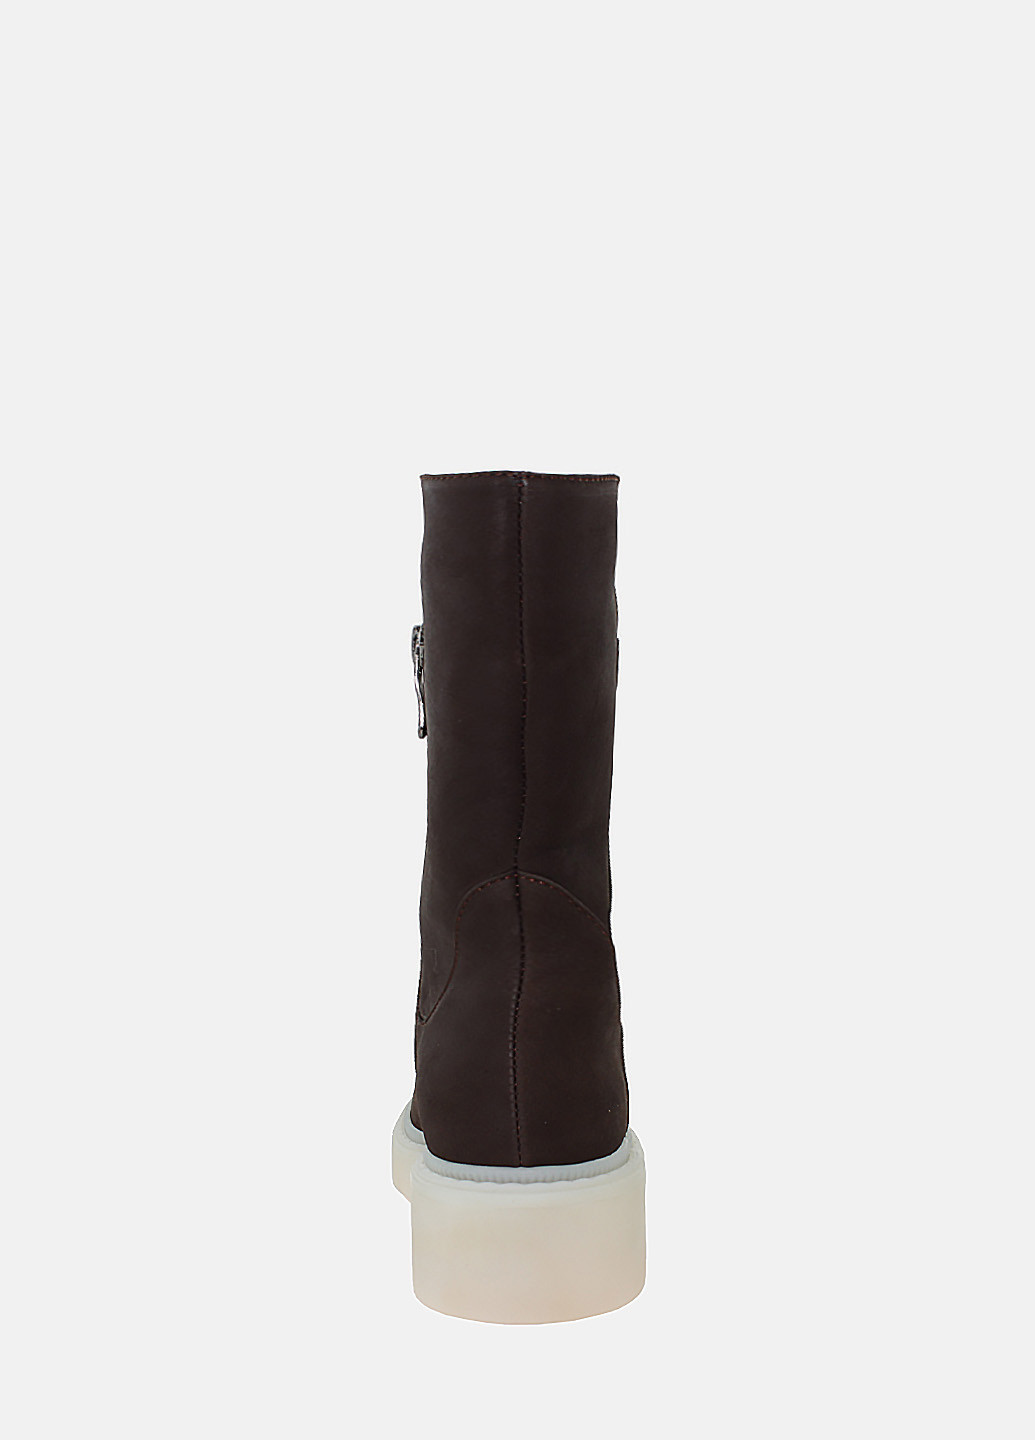 Зимние ботинки raджесс0-265 коричневый Alamo из натурального нубука